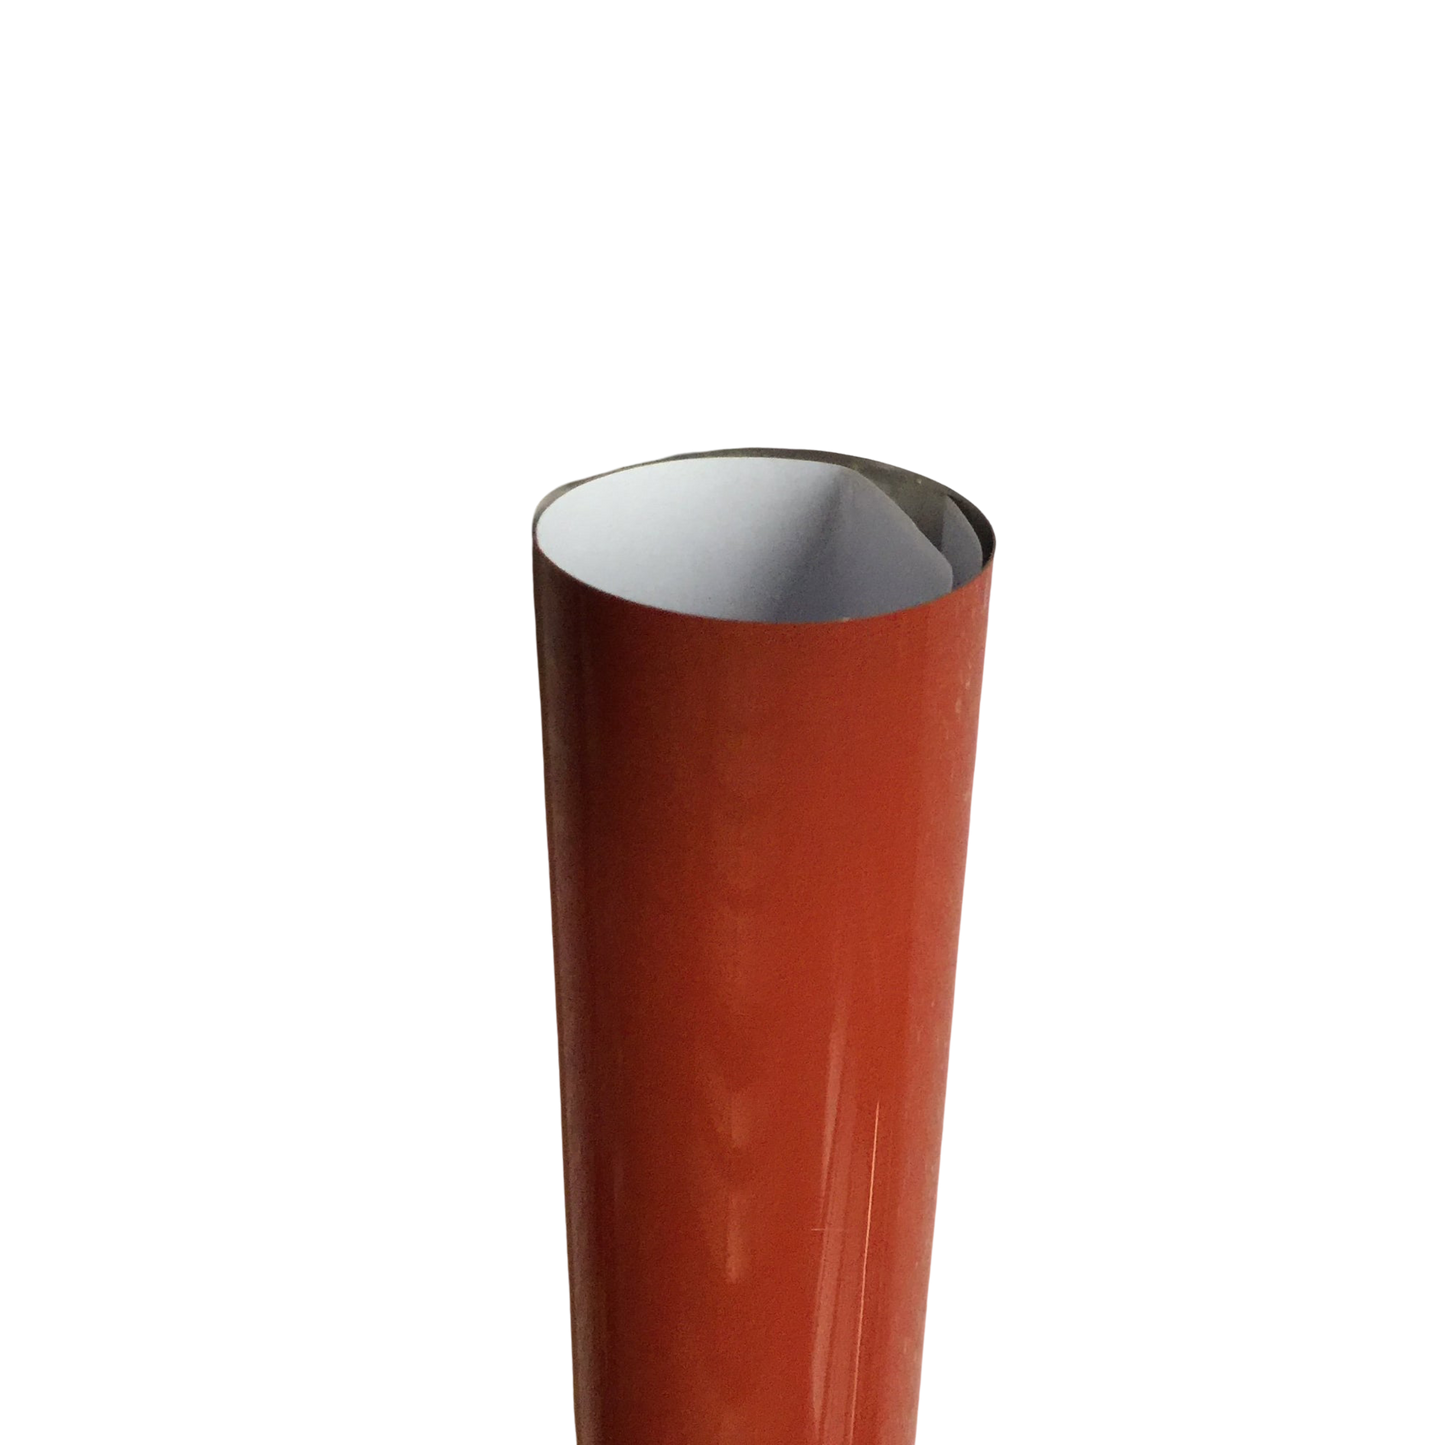 Fuser film Sleeve Konica Minolta bizhub C451 C452 C550 C552 C650 C660